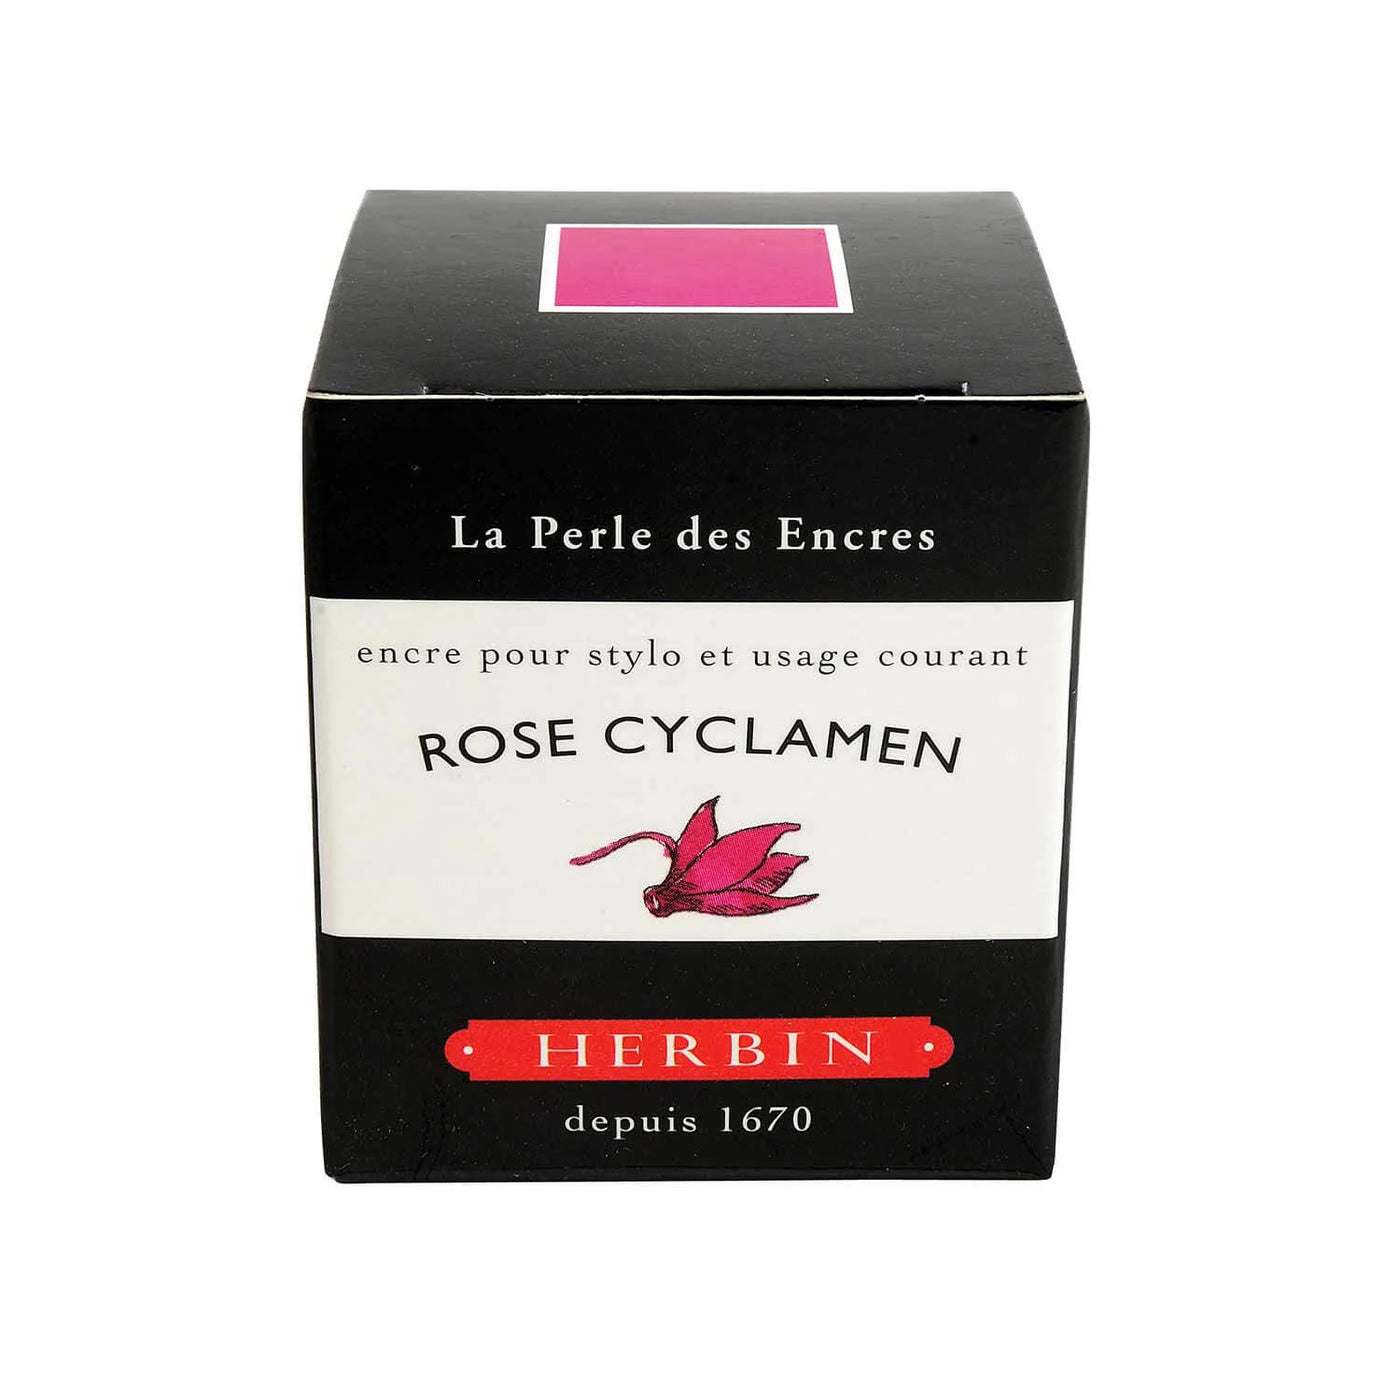 J Herbin "D" Series Ink Bottle Rose Cyclamen (Fuschia Pink) - 30ml 2